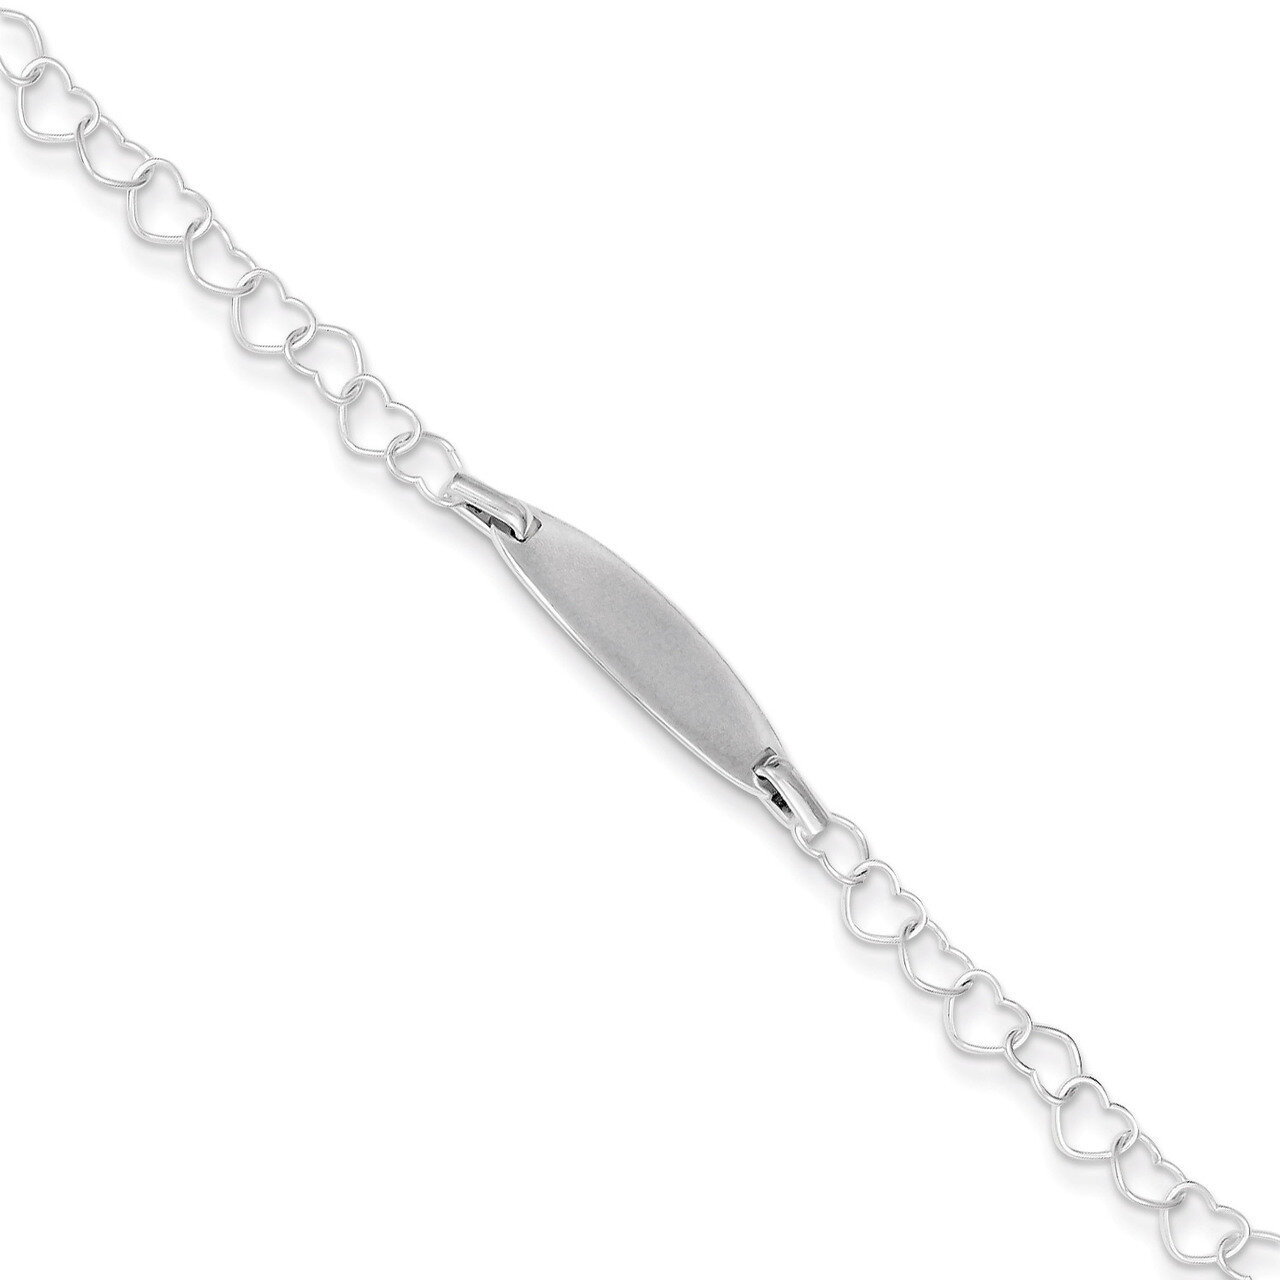 Polished Engravable Children's ID Heart Link Bracelet Sterling Silver QID173-5.5